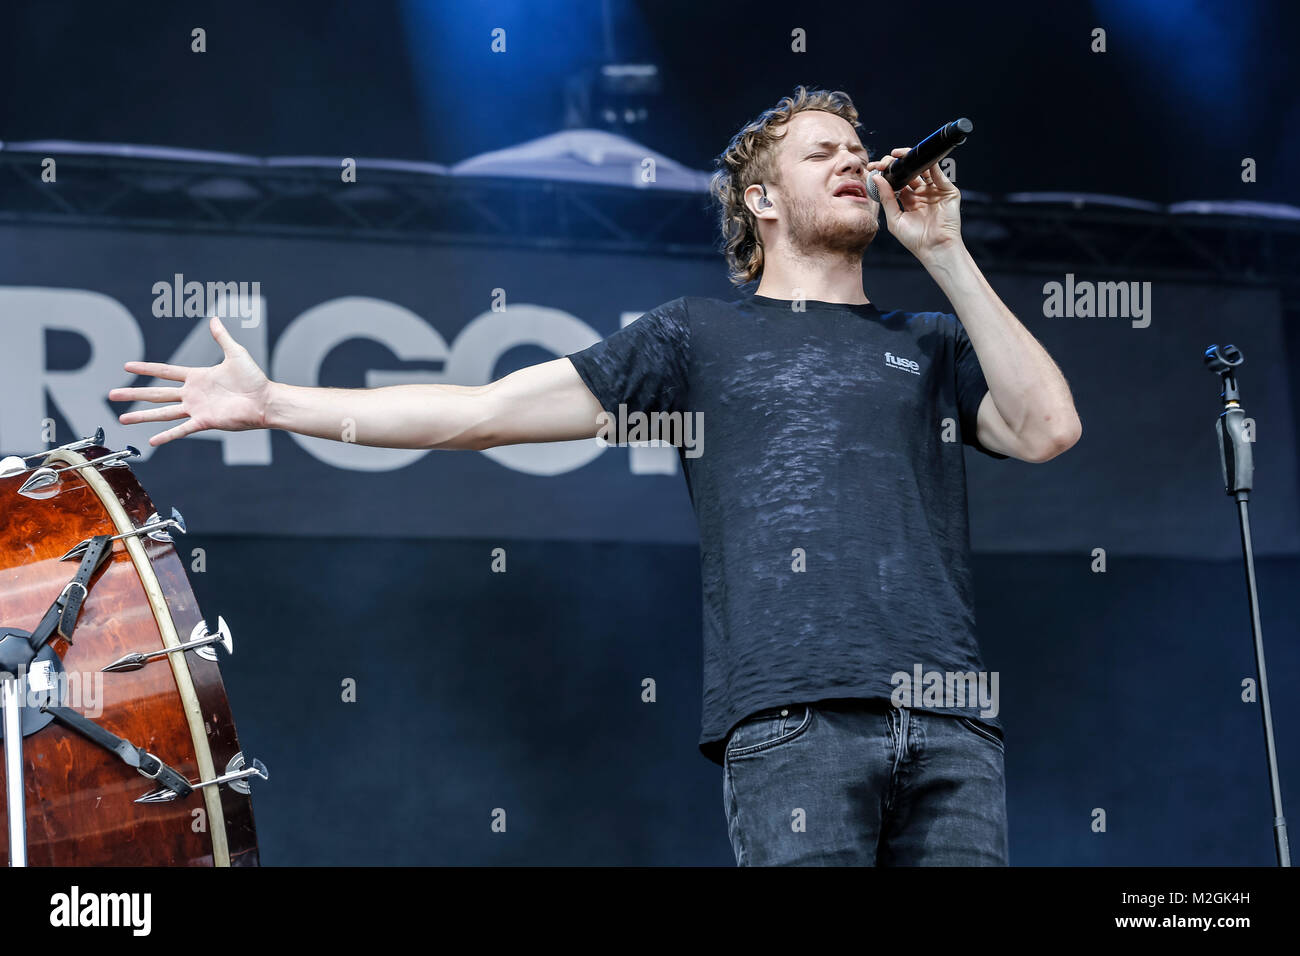 Sänger und Frontmann der Imagine Dragons Dan Reynolds beim Auftritt auf der Centerstage des Rock im Park-Festivals 2013 in Nürnberg. +++ 3S PHOTO / Foto: Sven-Sebastian Sajak Stock Photo